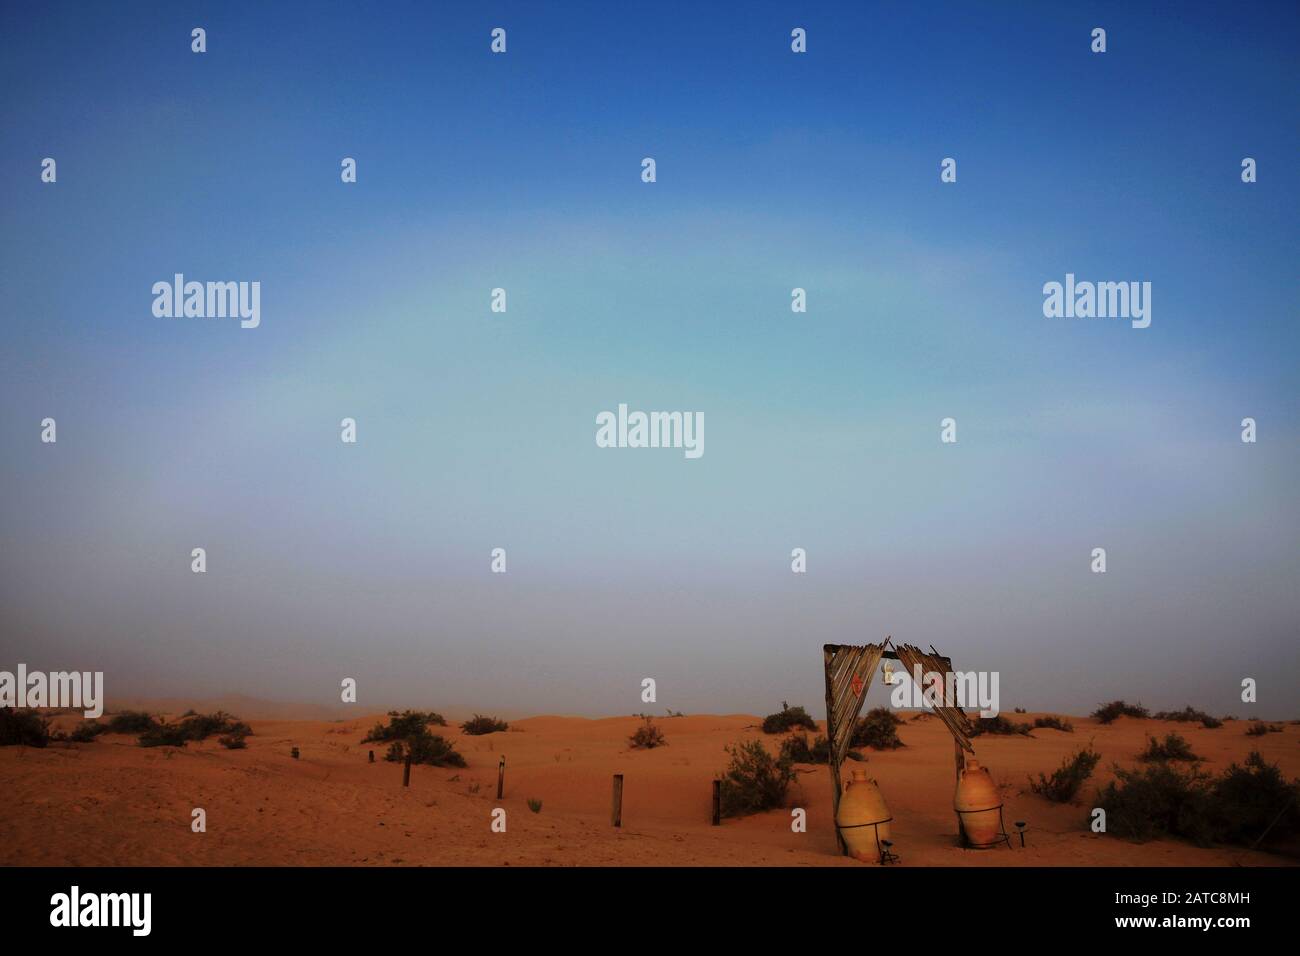 Le fogbow se courbe sur le ciel au-dessus des dunes de sable au Sahara Banque D'Images